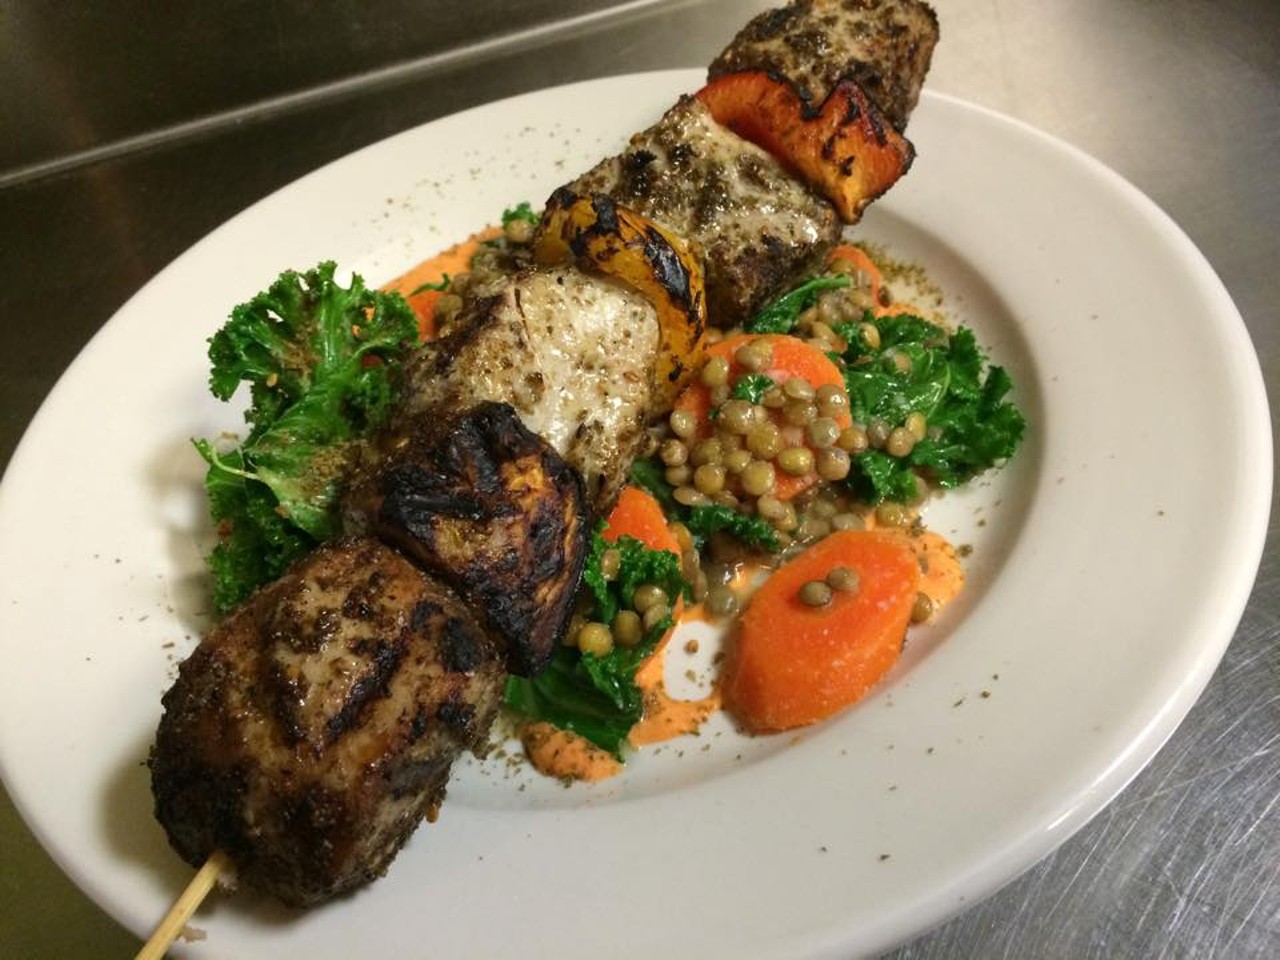 Best Middle Eastern Restaurant: Anita's Kitchen (Photo via Facebook)